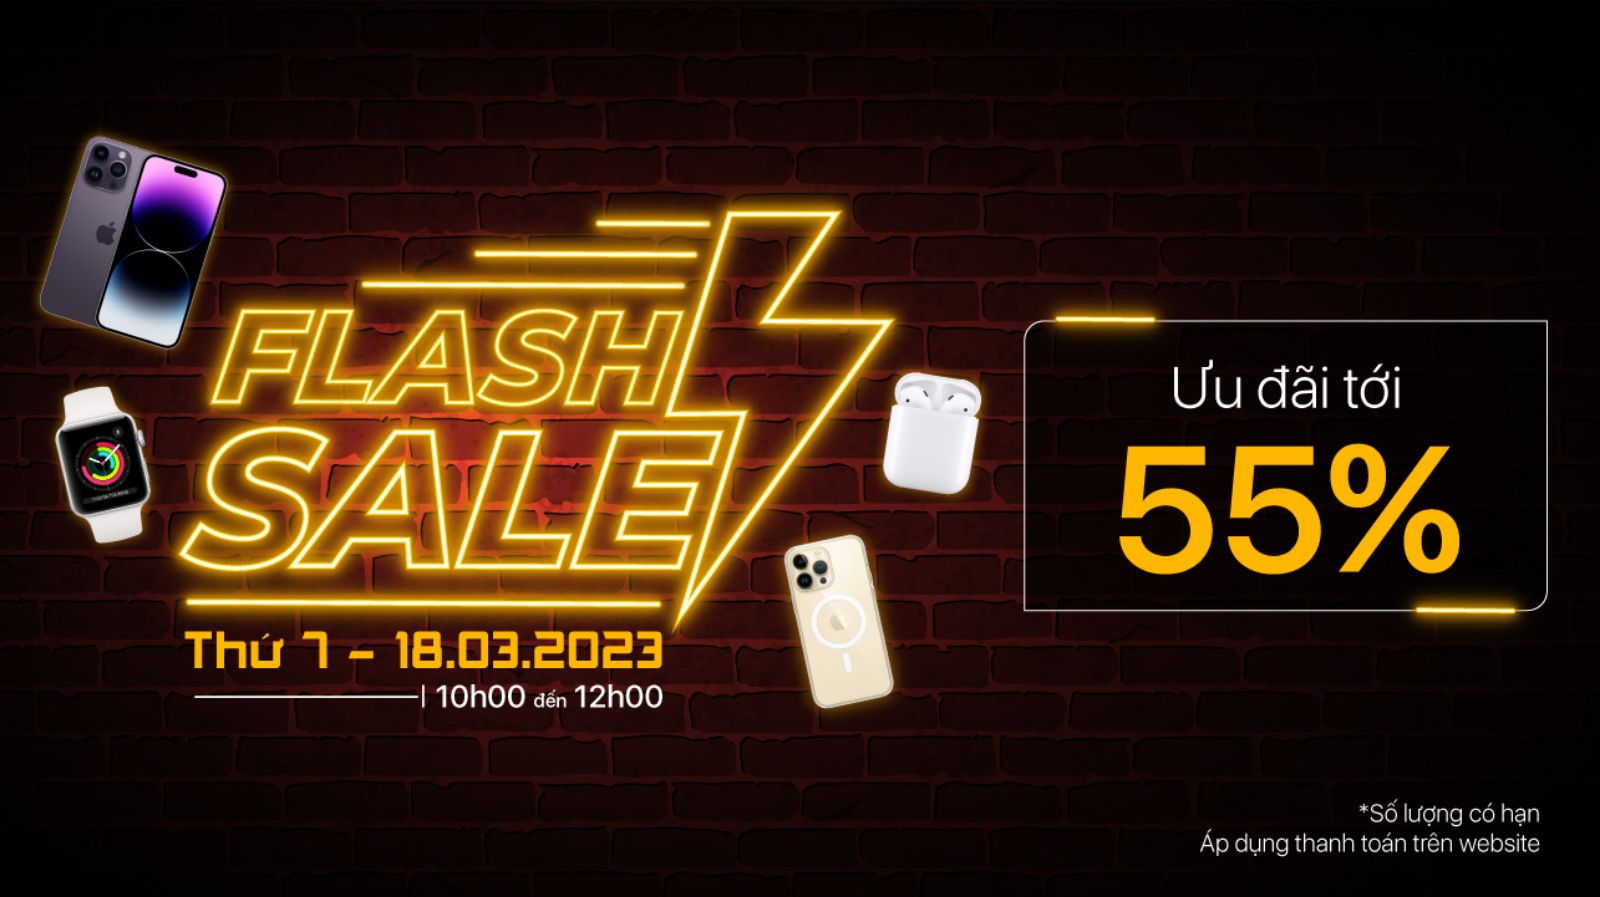 Hình ảnh cho danh mục Flash Sale tới - Thay mới iPhone: Giao hàng thần tốc cùng ưu đãi Apple tới 55%